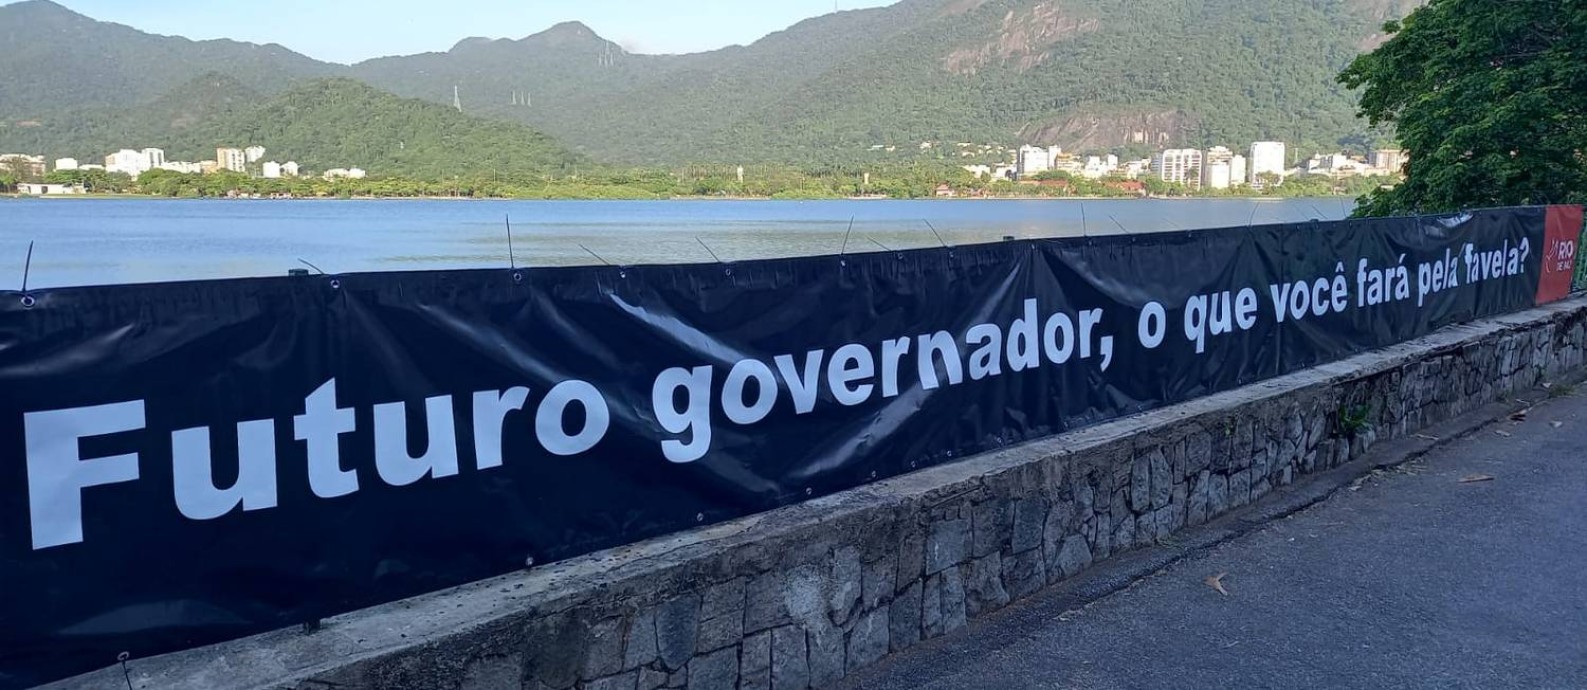 Em ano eleitoral, faixa da ONG Rio de Paz questiona sobre planos de futuro governador do Rio para as favelas Foto: Divulgação/ONG Rio de Paz